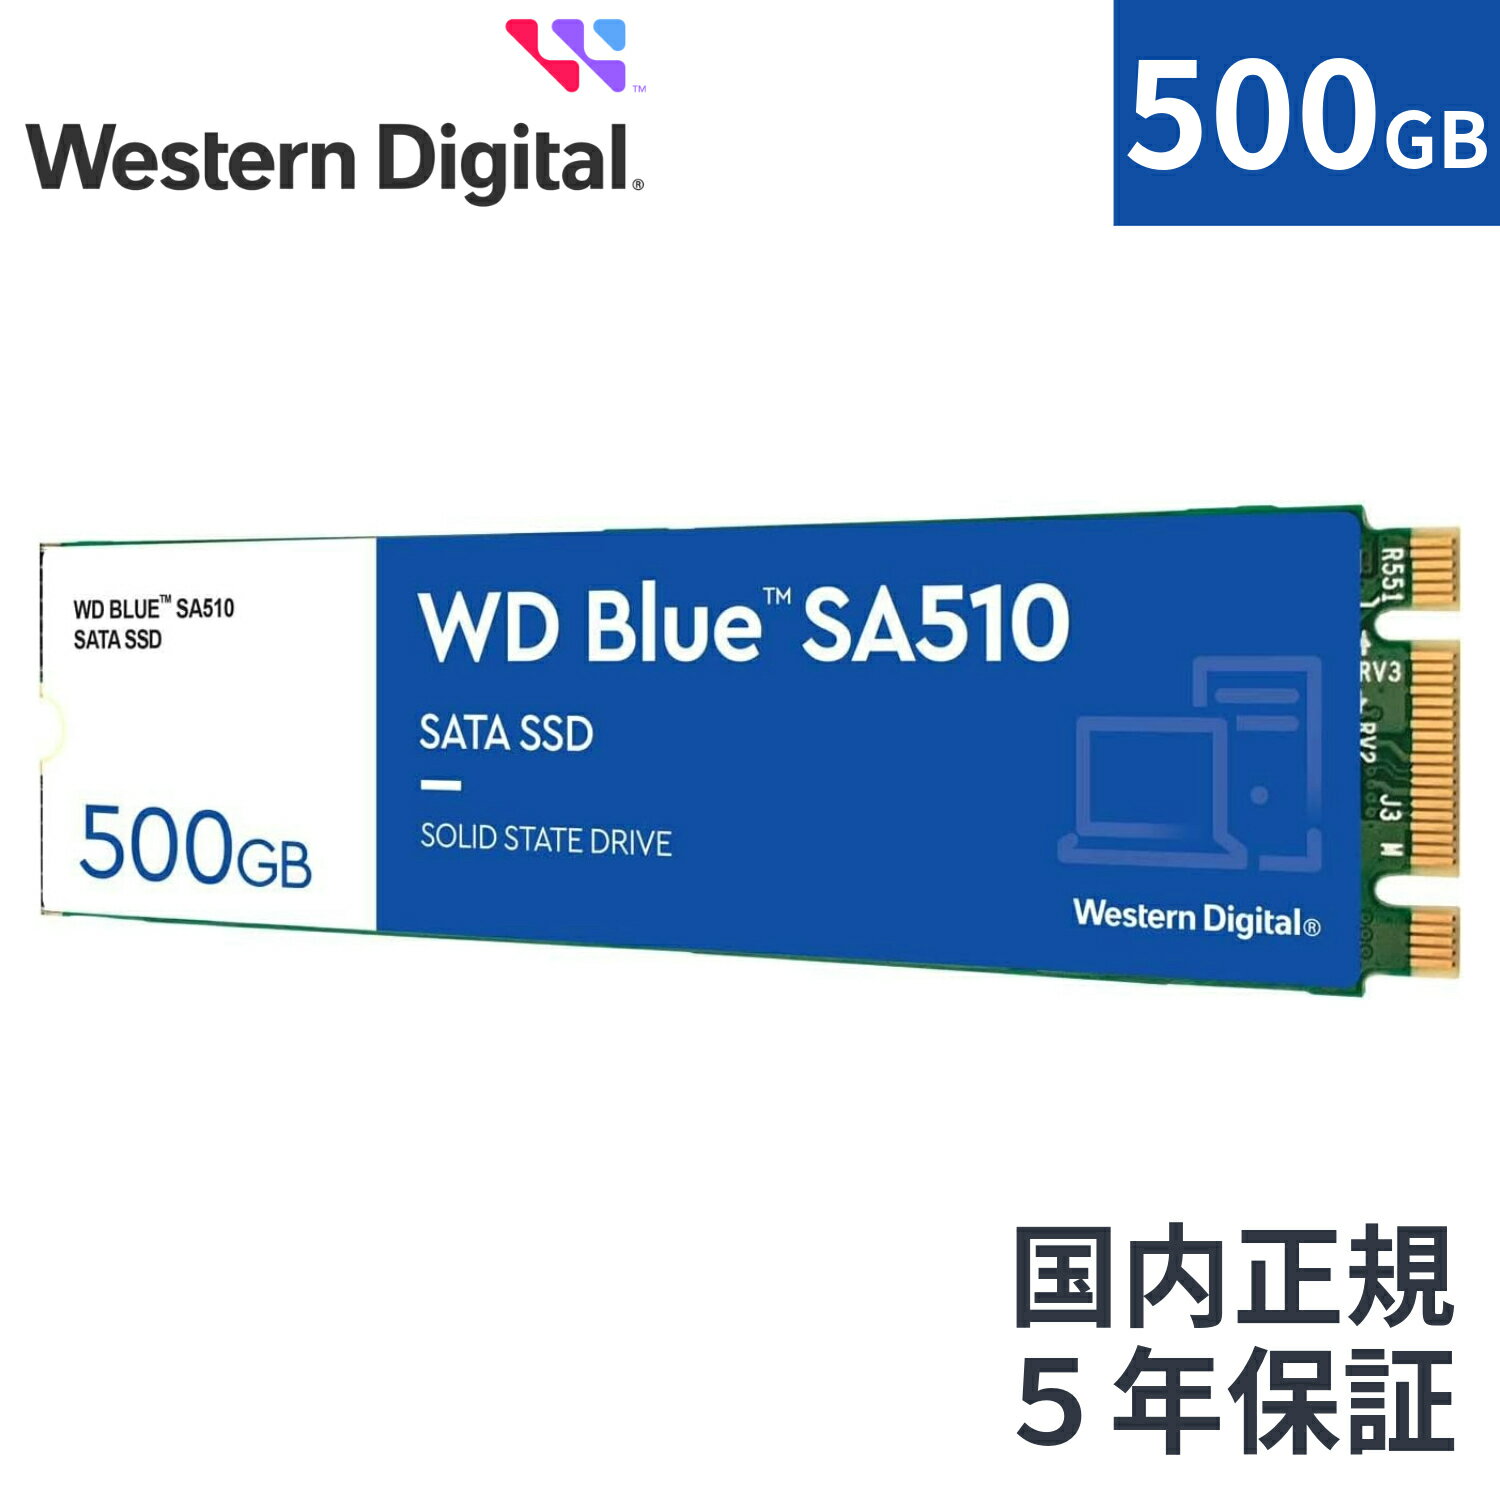 【国内正規流通品】 Western Digital ウエスタンデジタル 内蔵SSD 500GB WD Blue SA510 M.2-2280 SATA WDS500G3B0B |省電力 ノートPC 増設 長寿命 増設 高速 PCパーツ 内蔵ssd